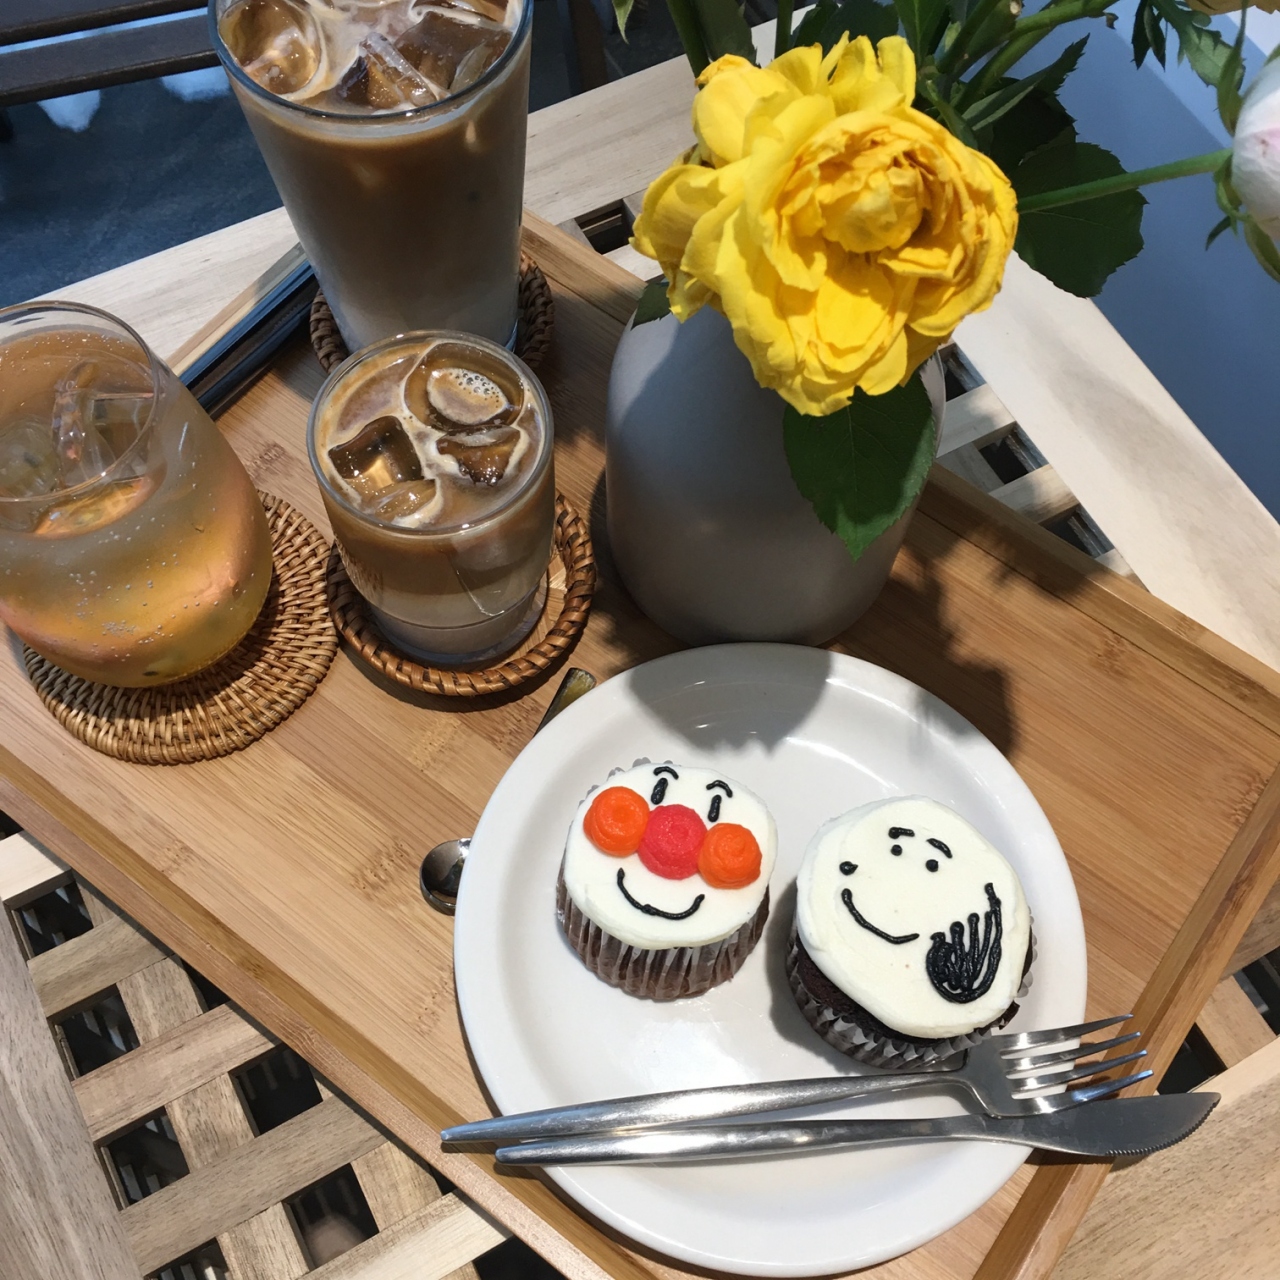 大邱旅行 韓国女子インスタで話題のカフェを巡ってみた 大邱 韓国 の旅行記 ブログ By ネサランこりあさん フォートラベル